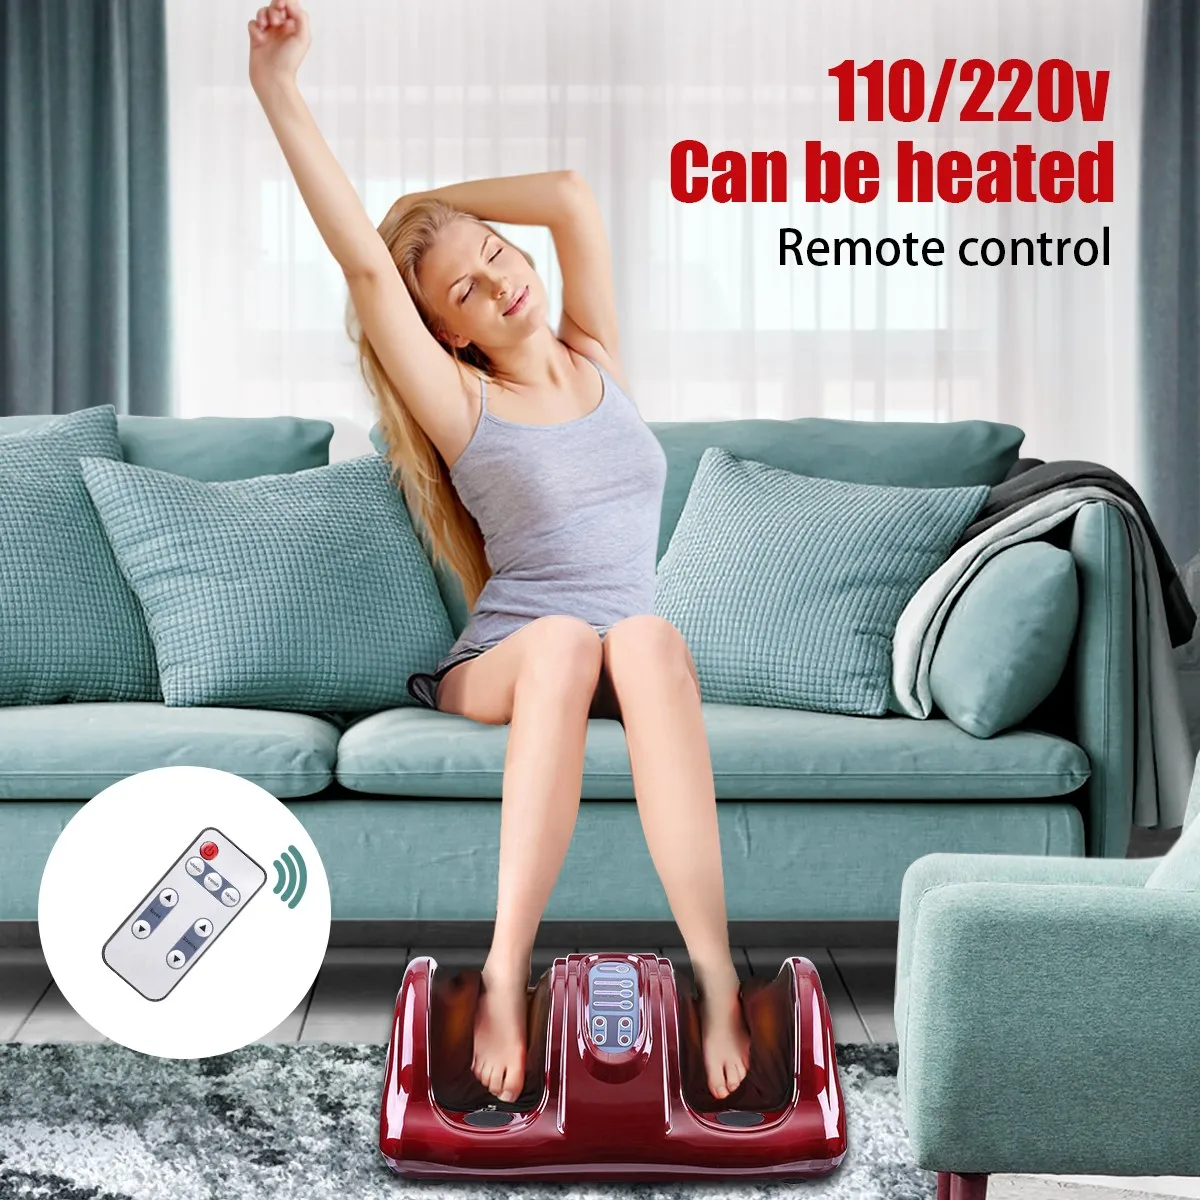 220V Foot Massager Electric Heating Foot Body Leg Massager Shiatsu Kneading Roller Vibrator Machine Reflexology Calf Leg Relax